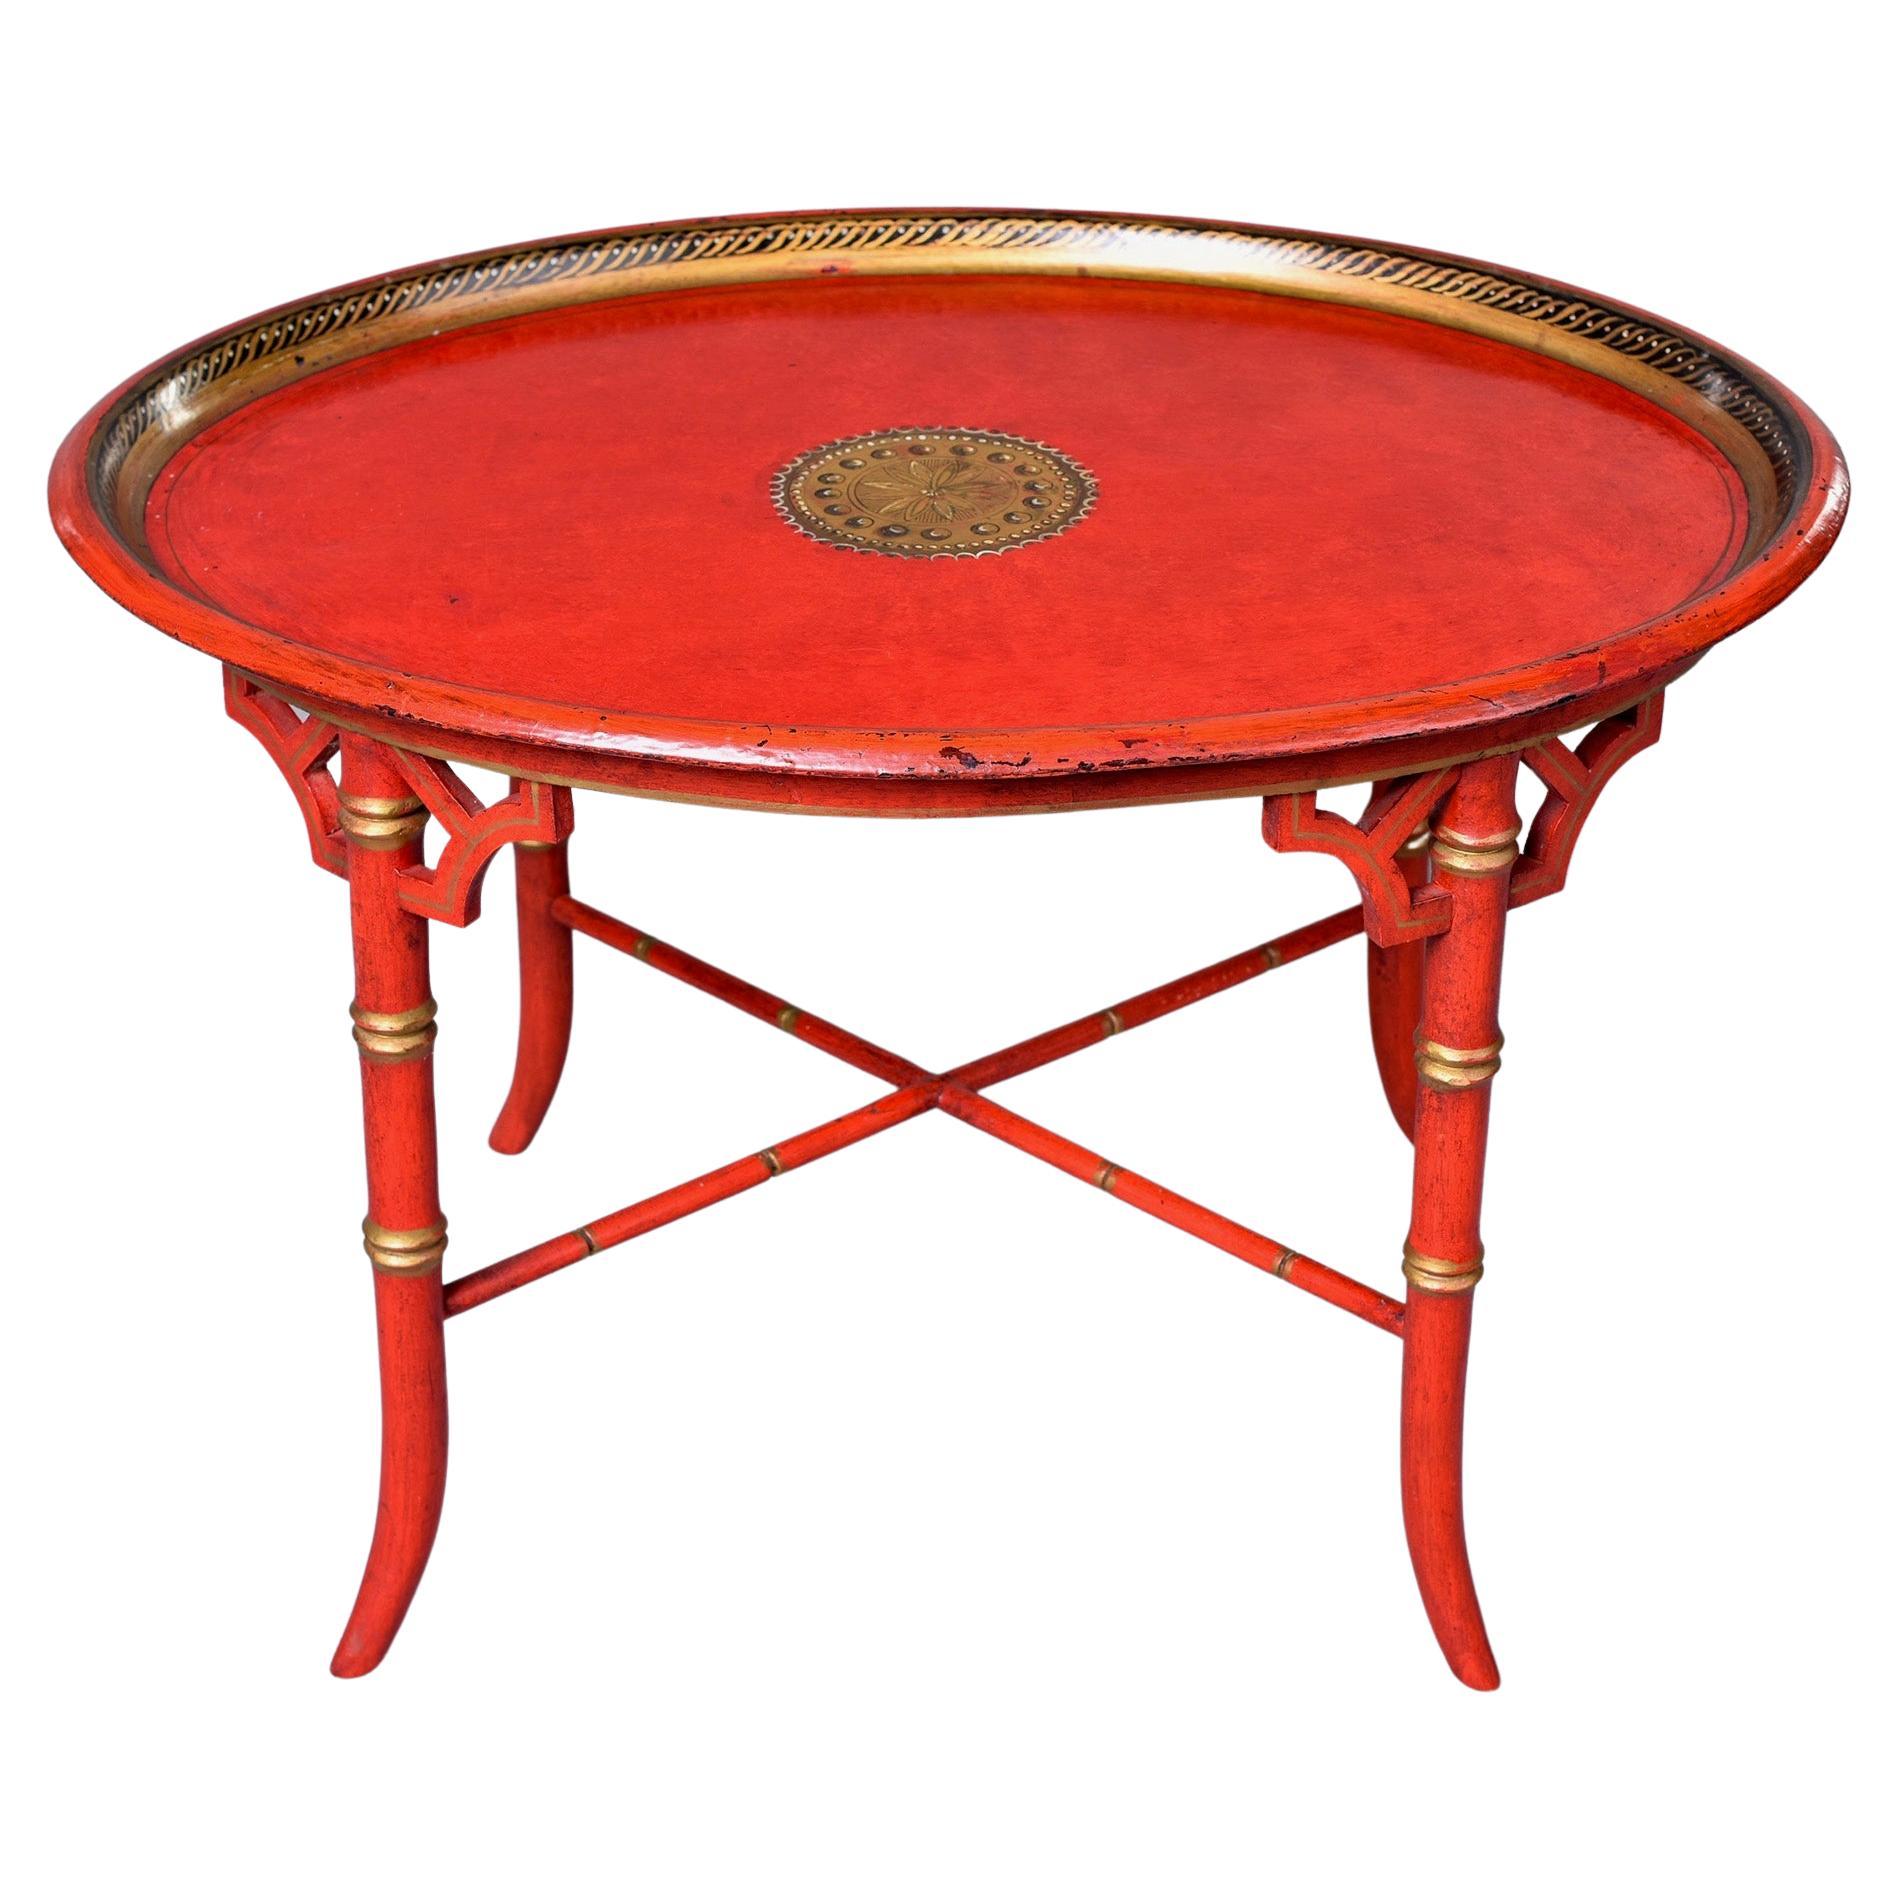 Table d'appoint ovale de style chinoiserie du début du XXe siècle